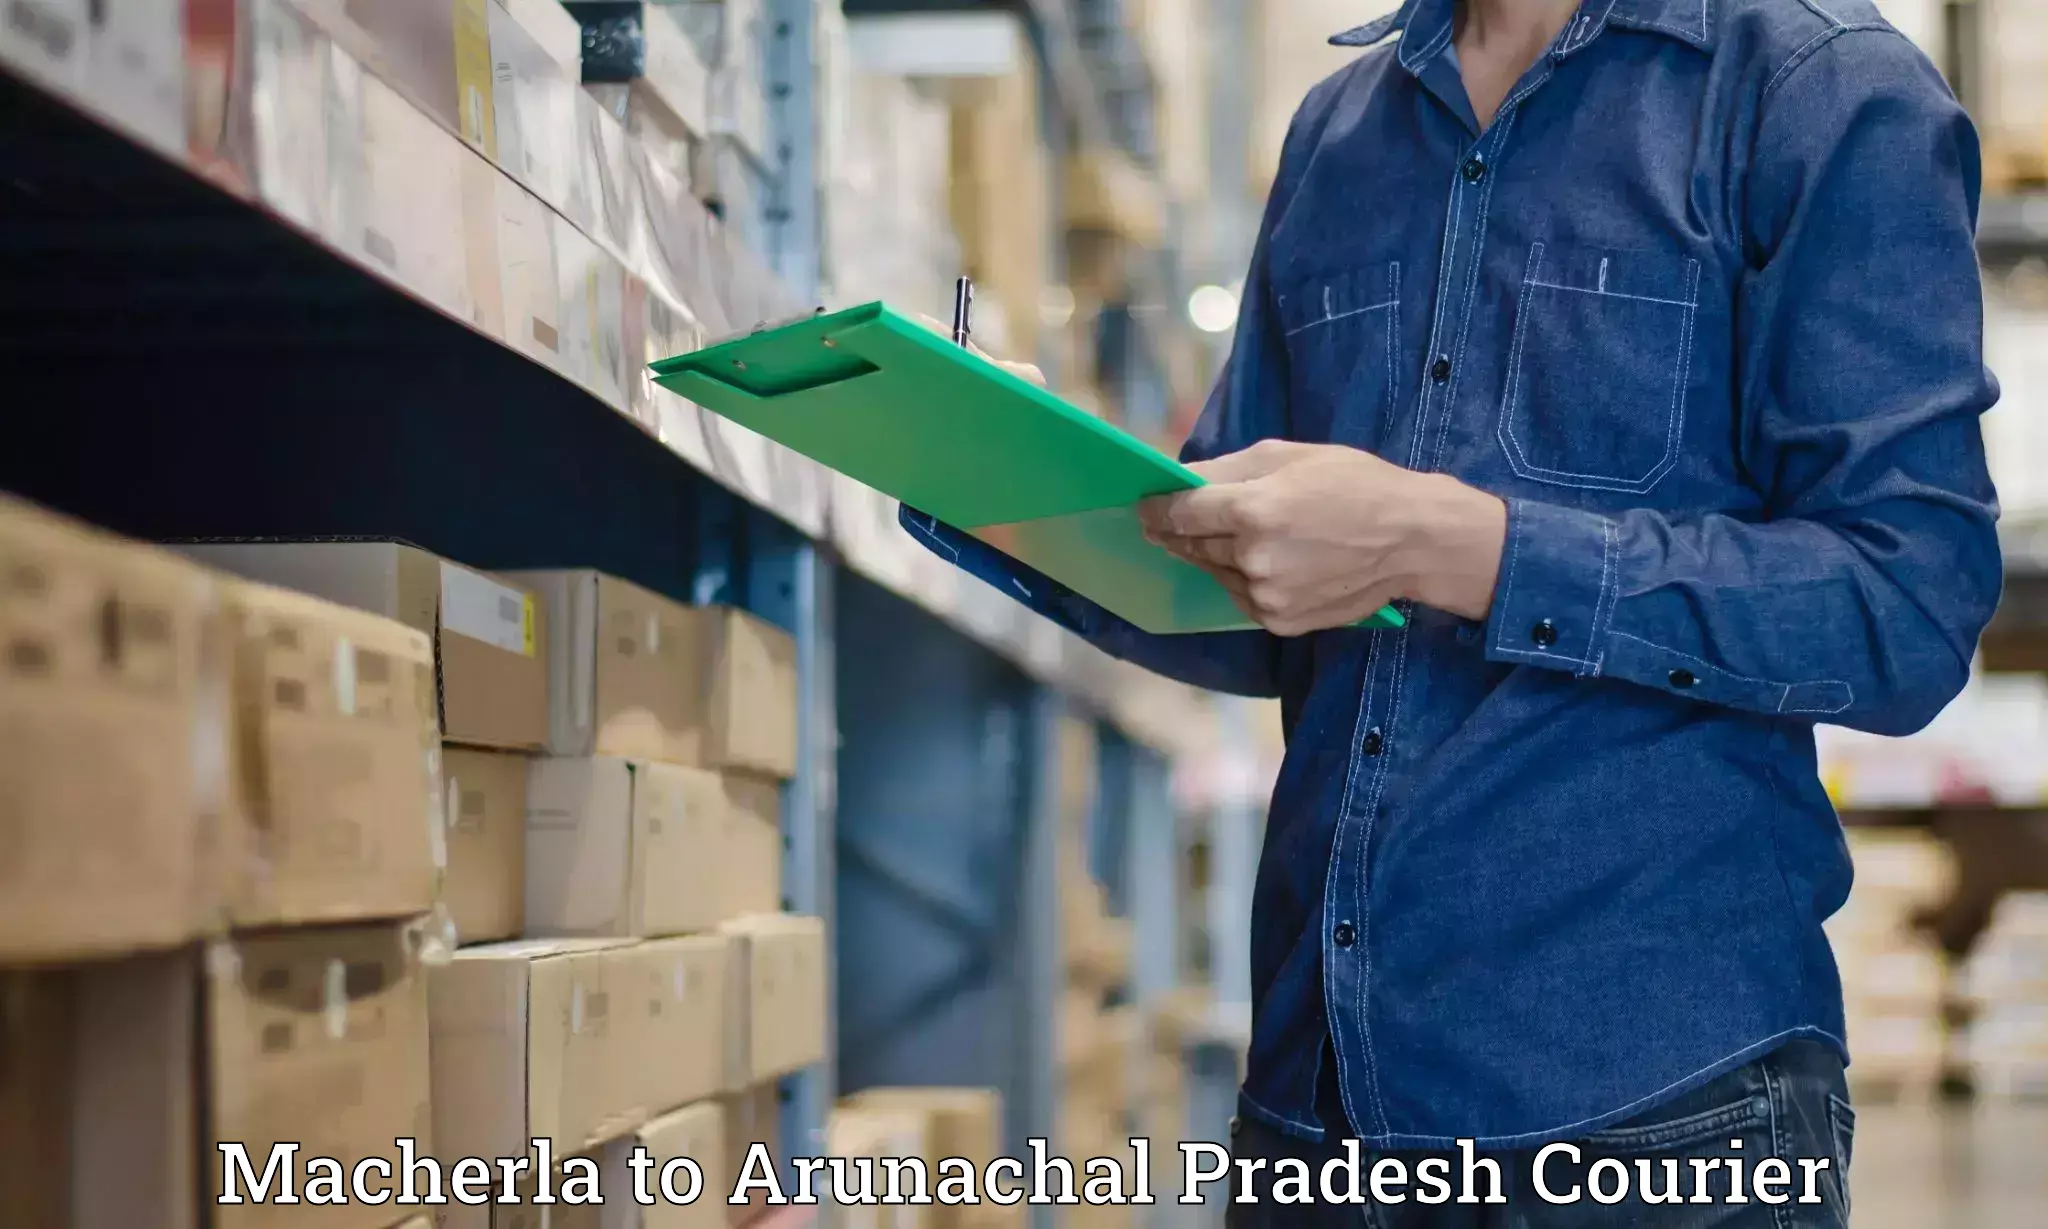 Urban courier service Macherla to Arunachal Pradesh